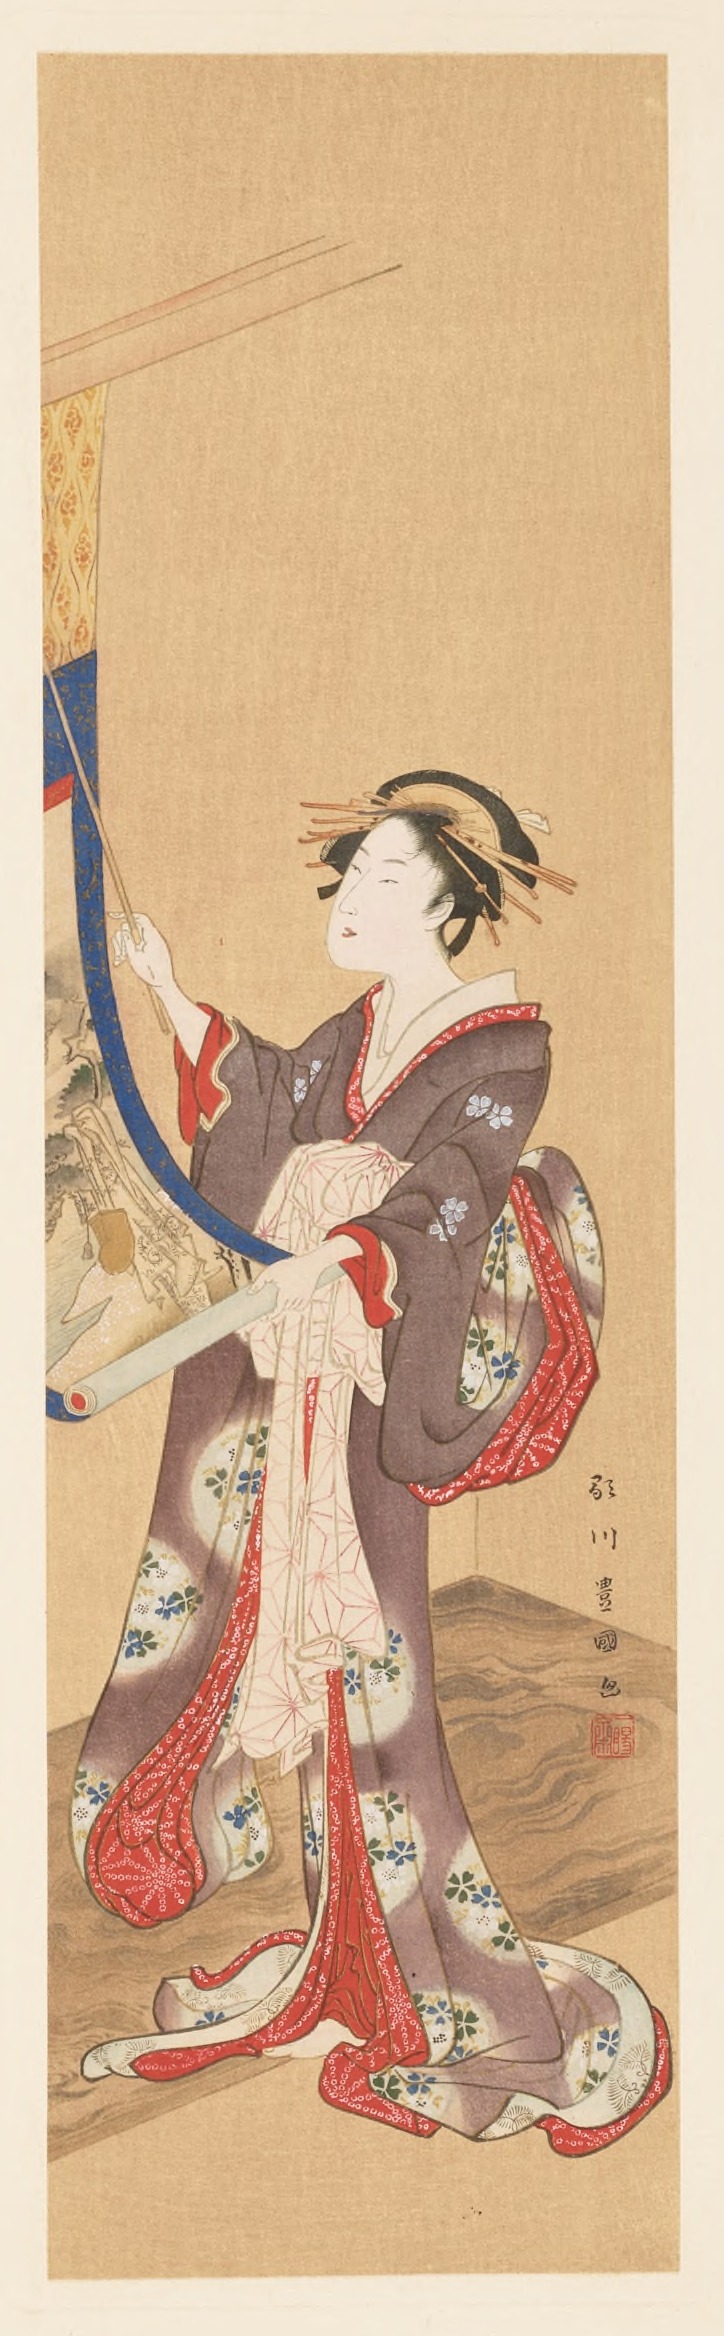 Shiichi Tajima - Masterpieces selected from the Ukiyoyé School, Pl.17